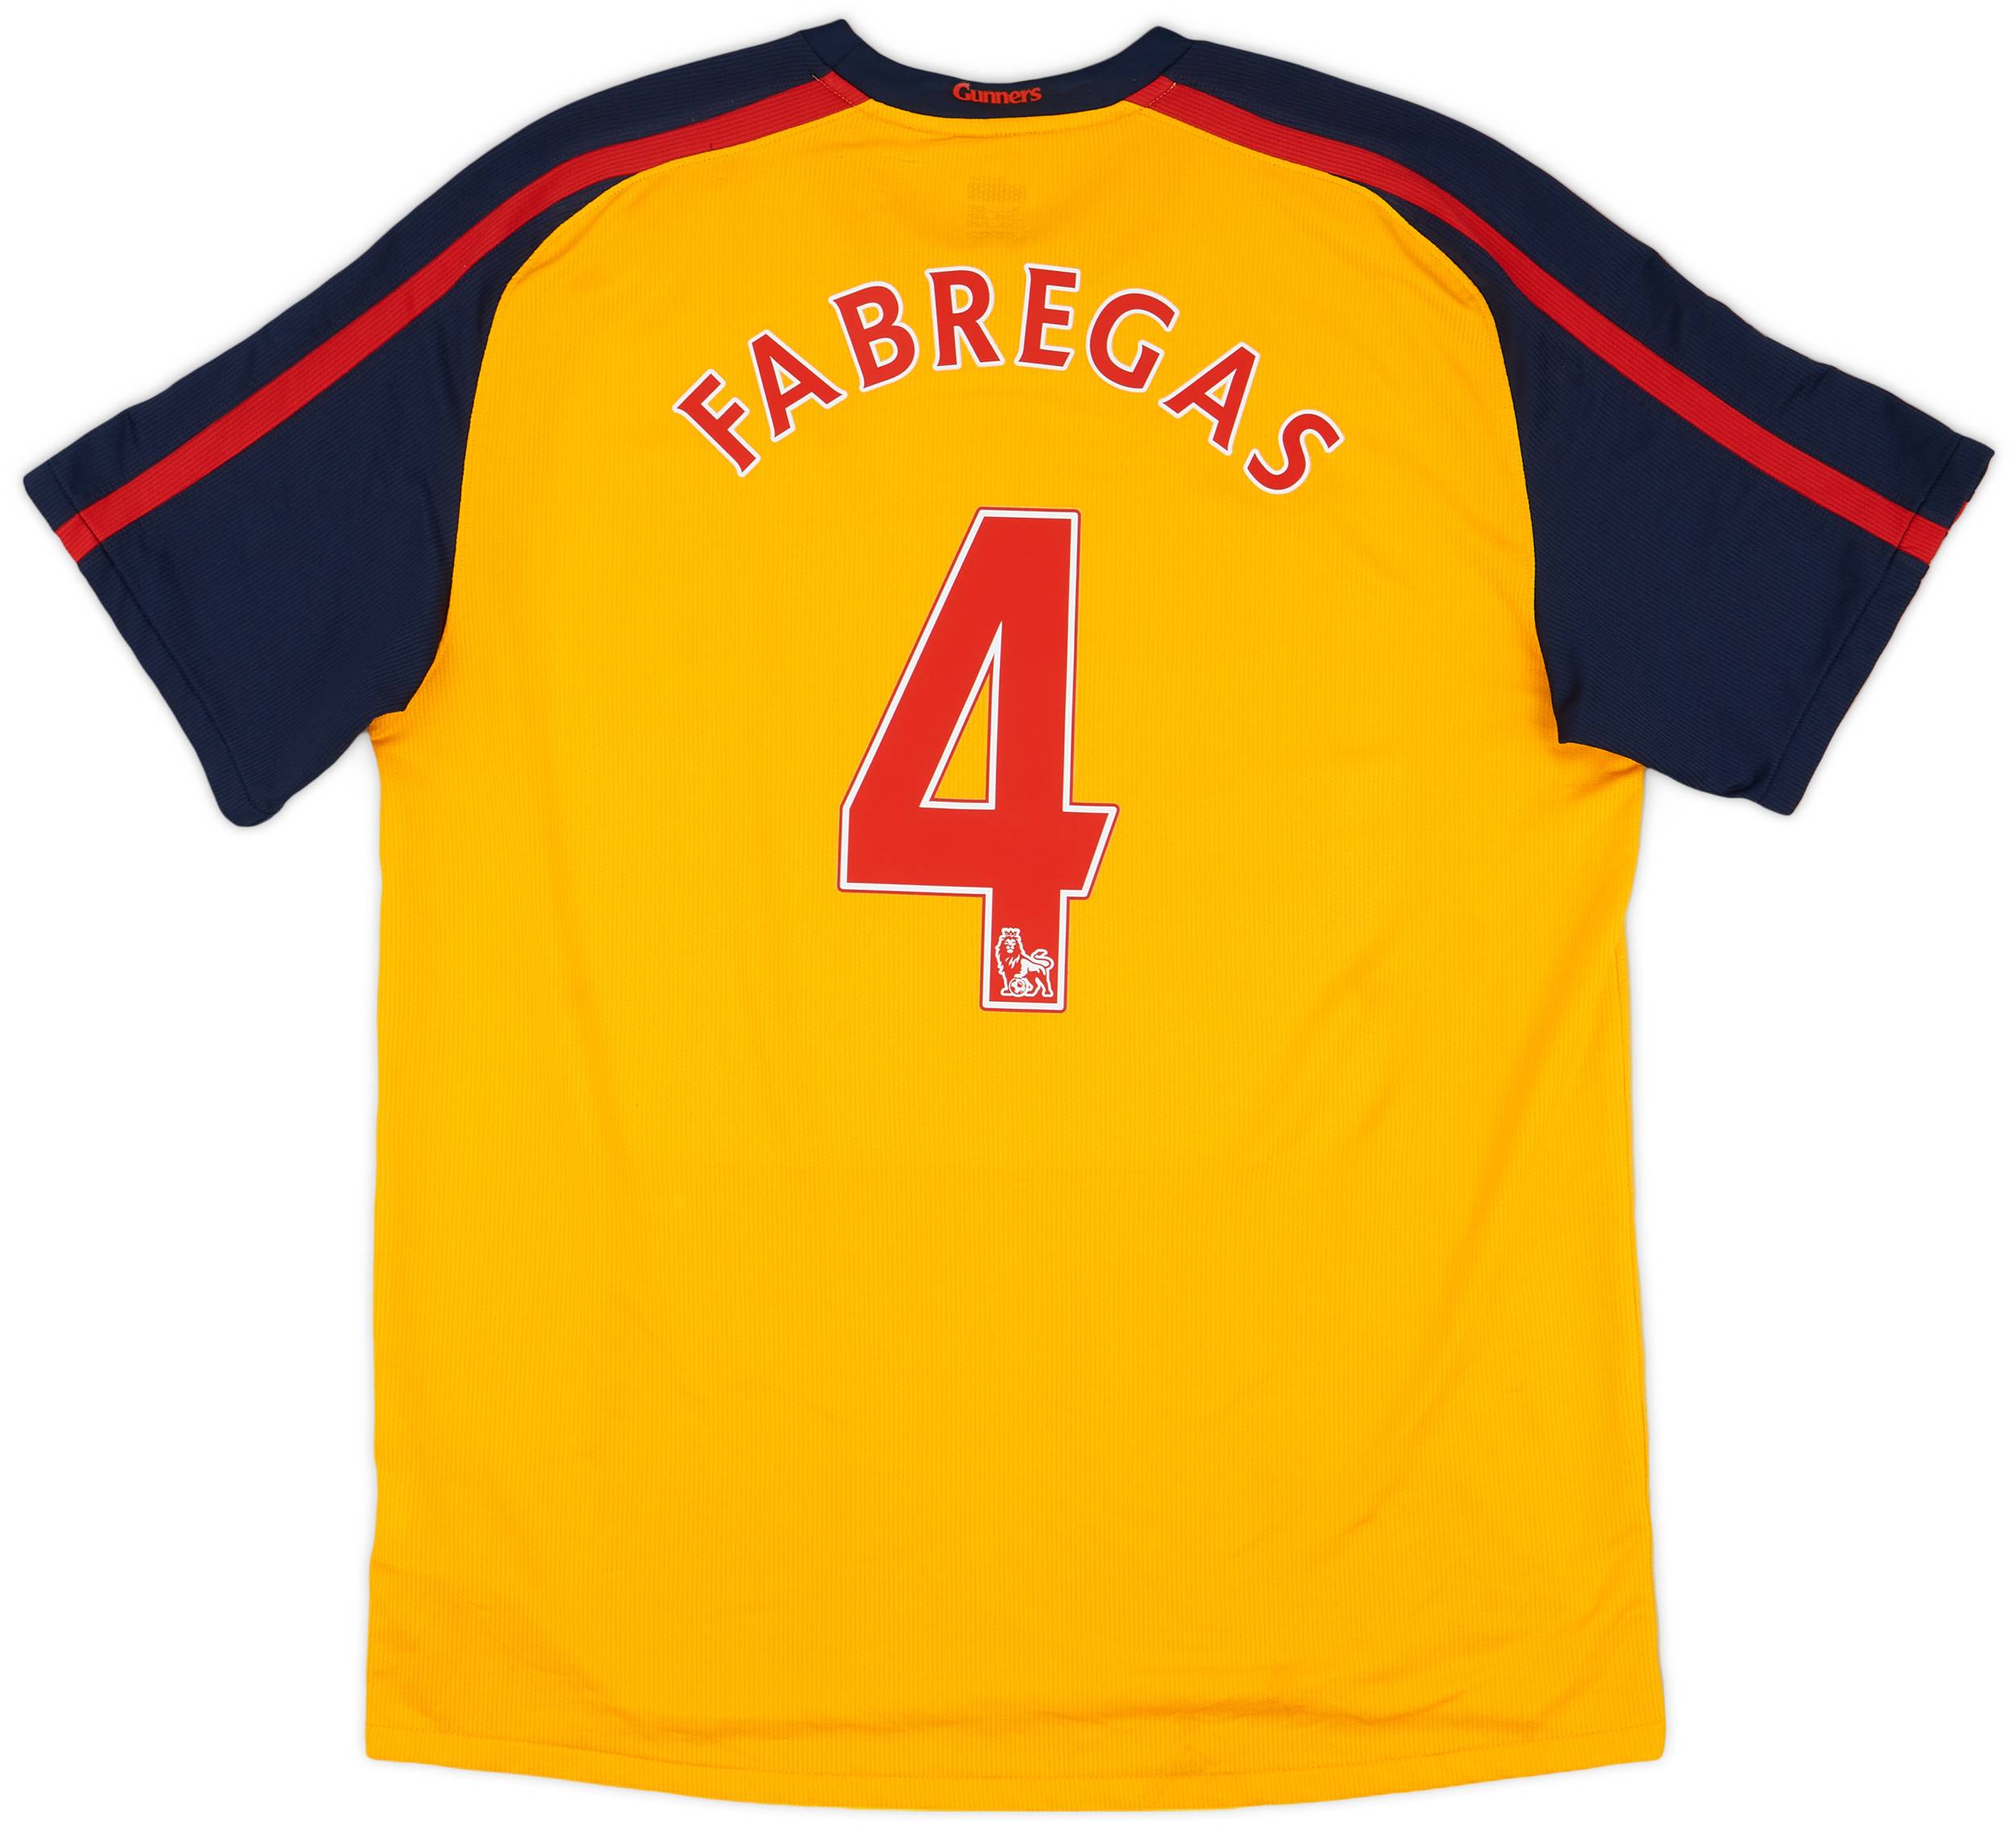 2008-09 Arsenal Away Shirt Fabregas #4 - 8/10 - (XL)